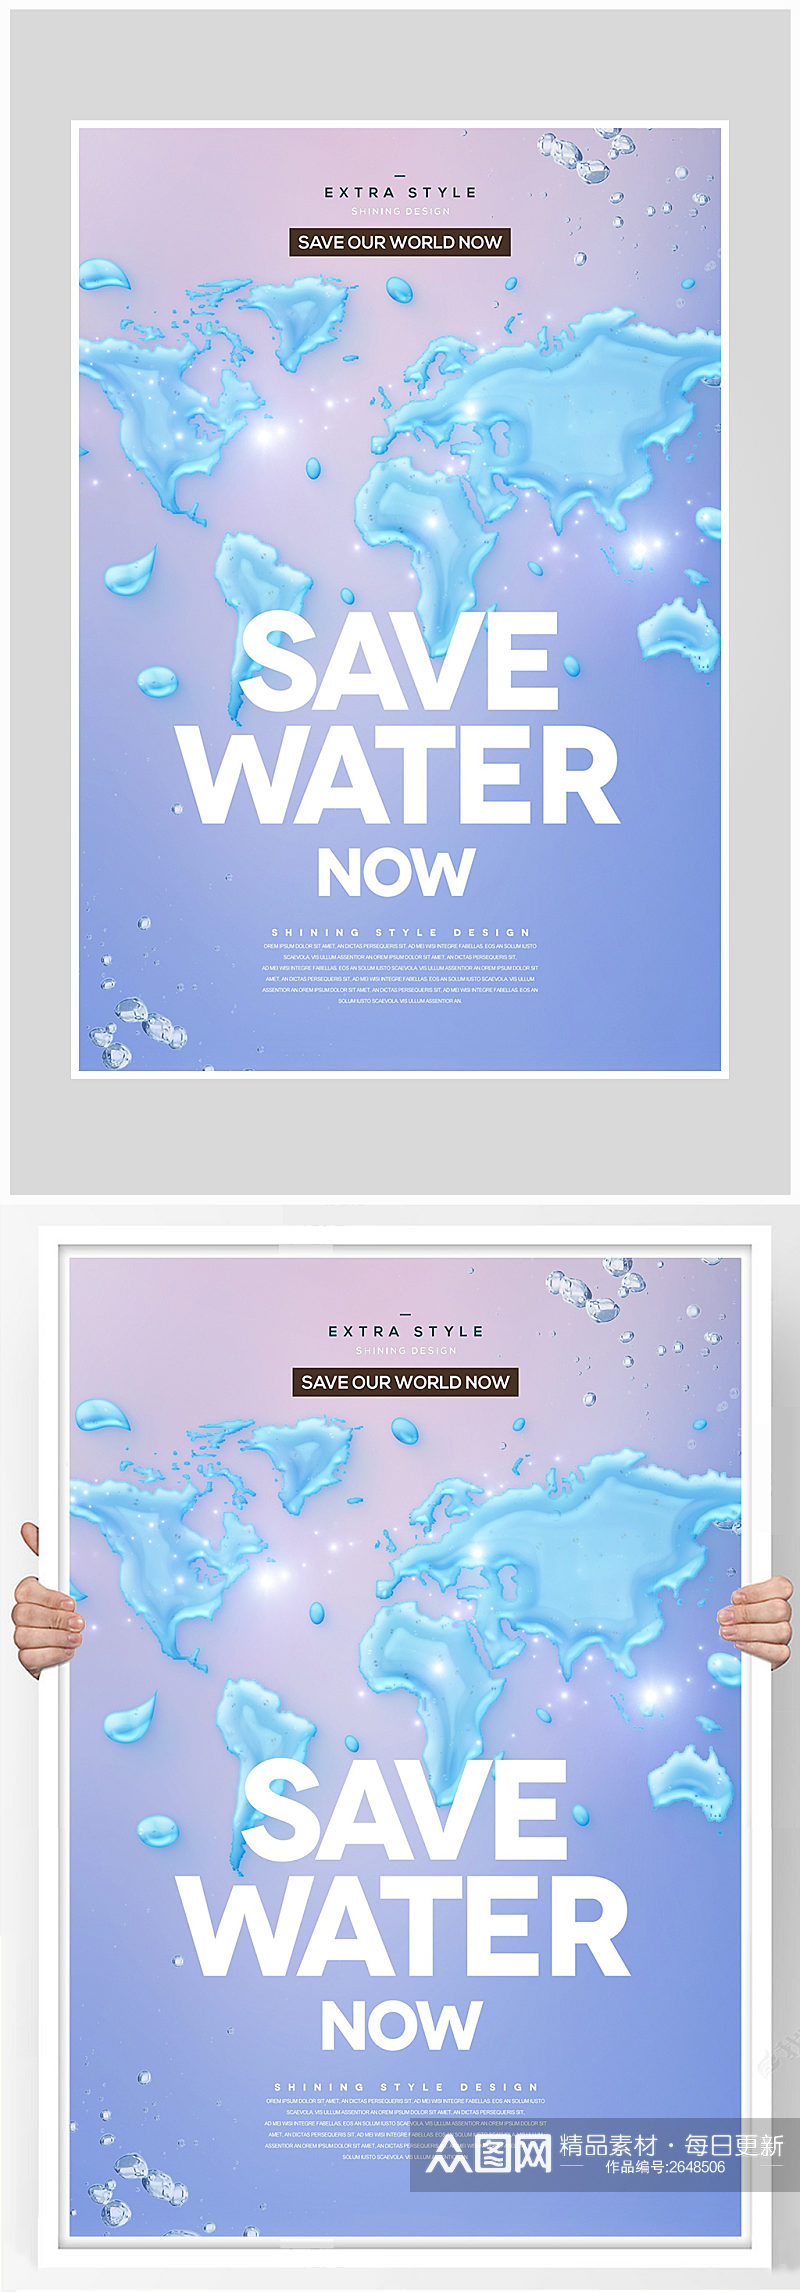 真爱水资源保护环境海报设计素材